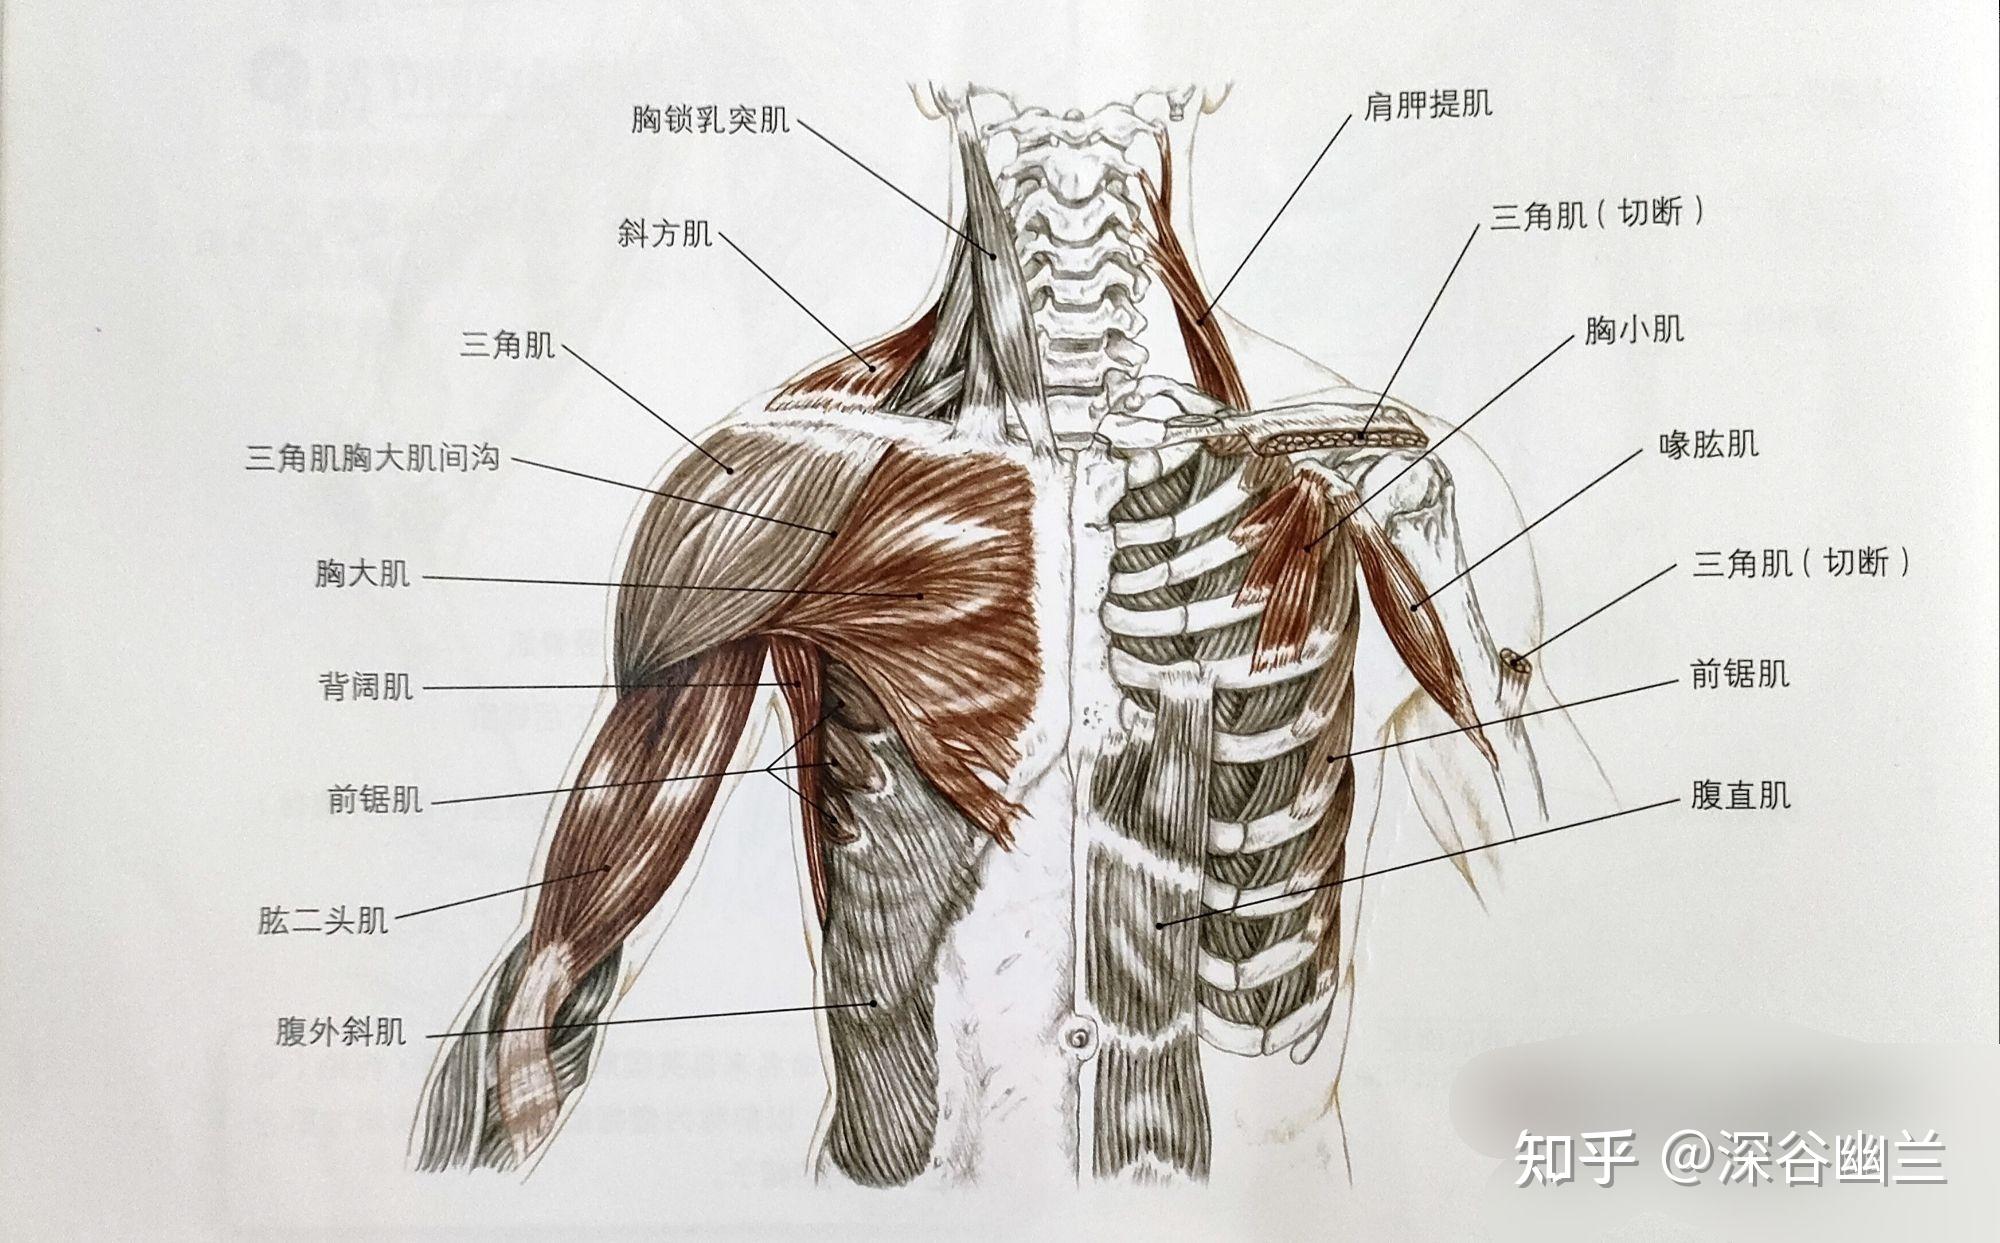 胸大肌与胸小肌由胸前神经(c5～t1)支配上肢内收和内旋,肩部由后向前